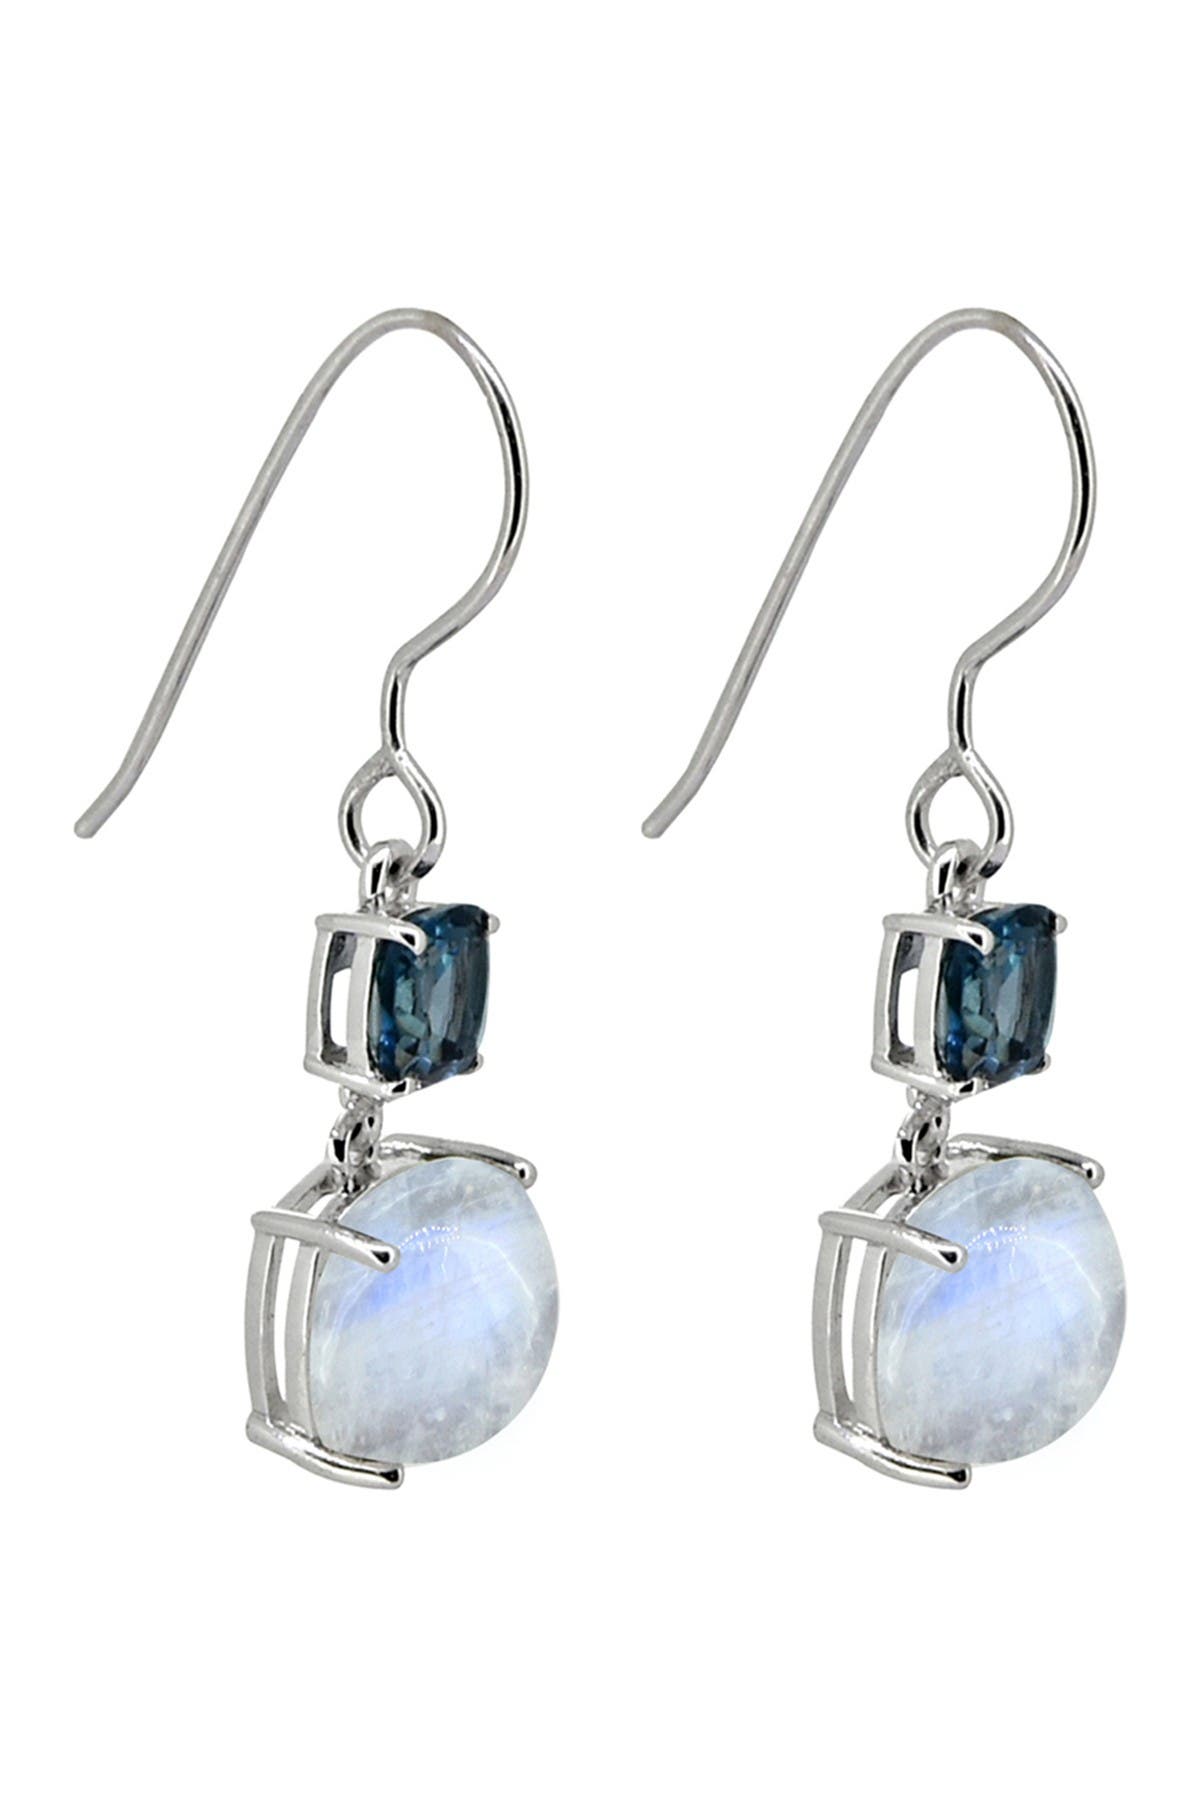 Blue Topaz gemstone earrings jewelry 2.16 925 Sterling Silver Rainbow moonstone